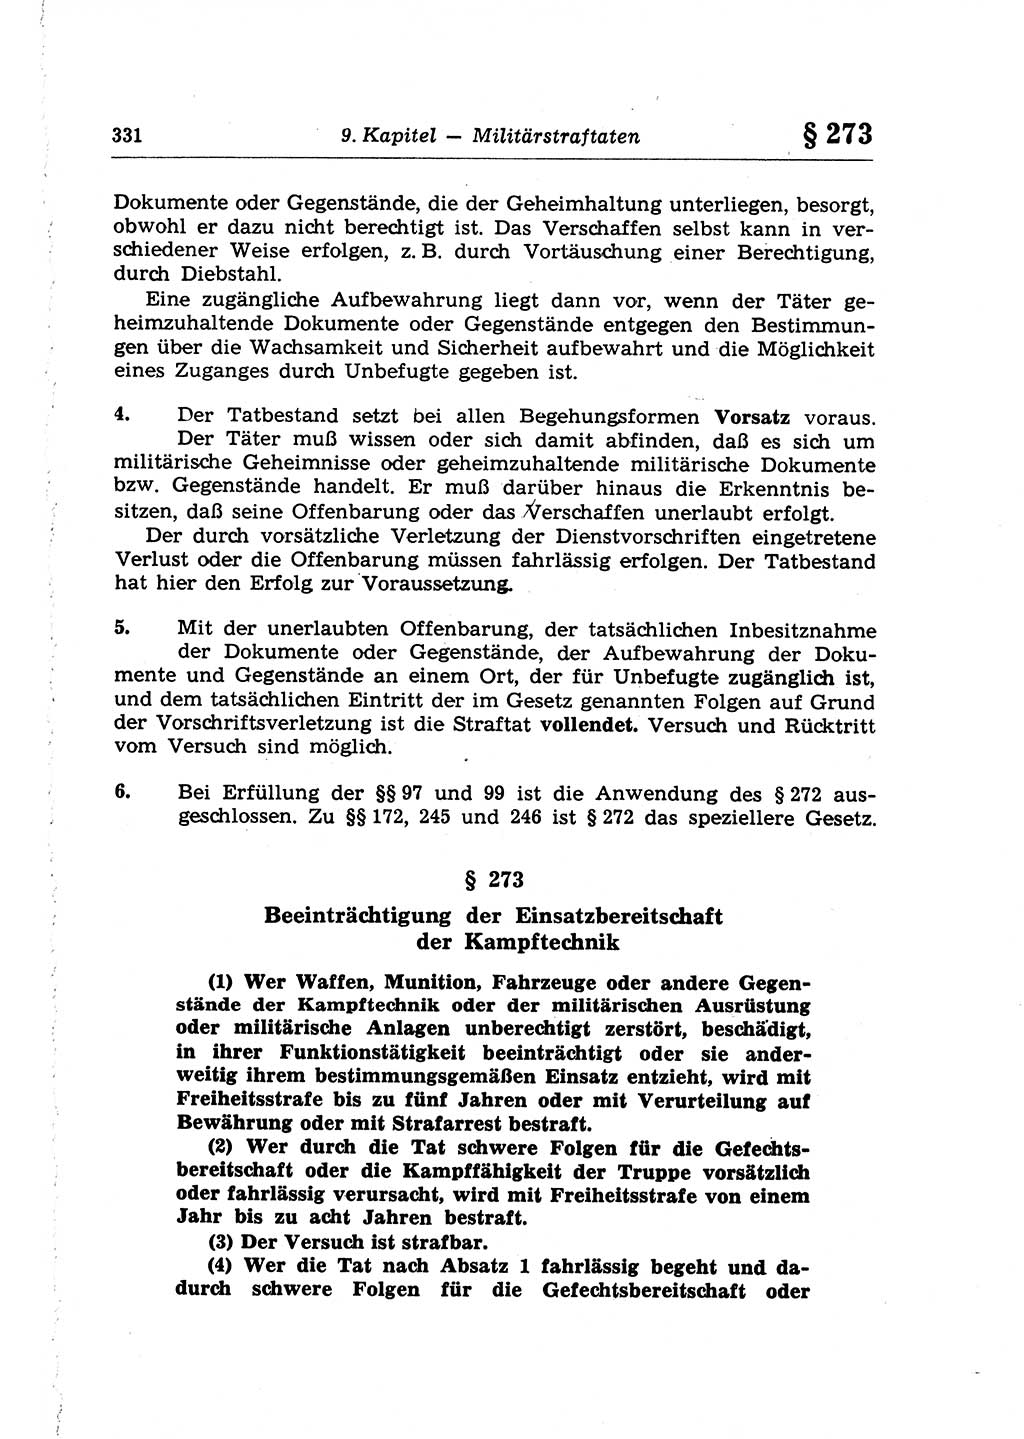 Strafrecht der Deutschen Demokratischen Republik (DDR), Lehrkommentar zum Strafgesetzbuch (StGB), Besonderer Teil 1970, Seite 331 (Strafr. DDR Lehrkomm. StGB BT 1970, S. 331)